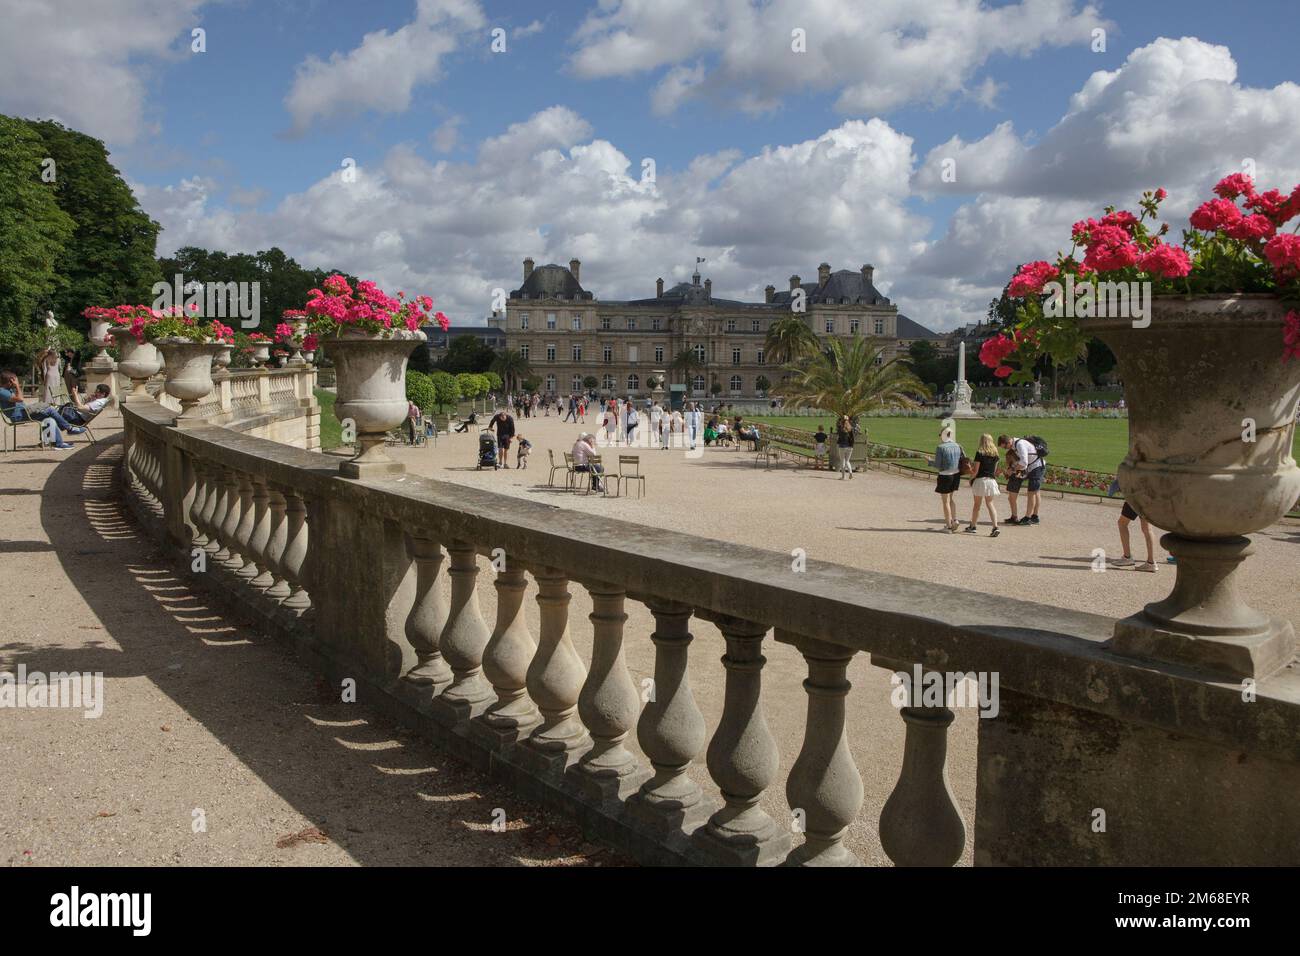 Le Palais du Luxembourg dans le jardin du Luxembourg, dans le 6th arrondissement de Paris, est une destination touristique populaire Banque D'Images